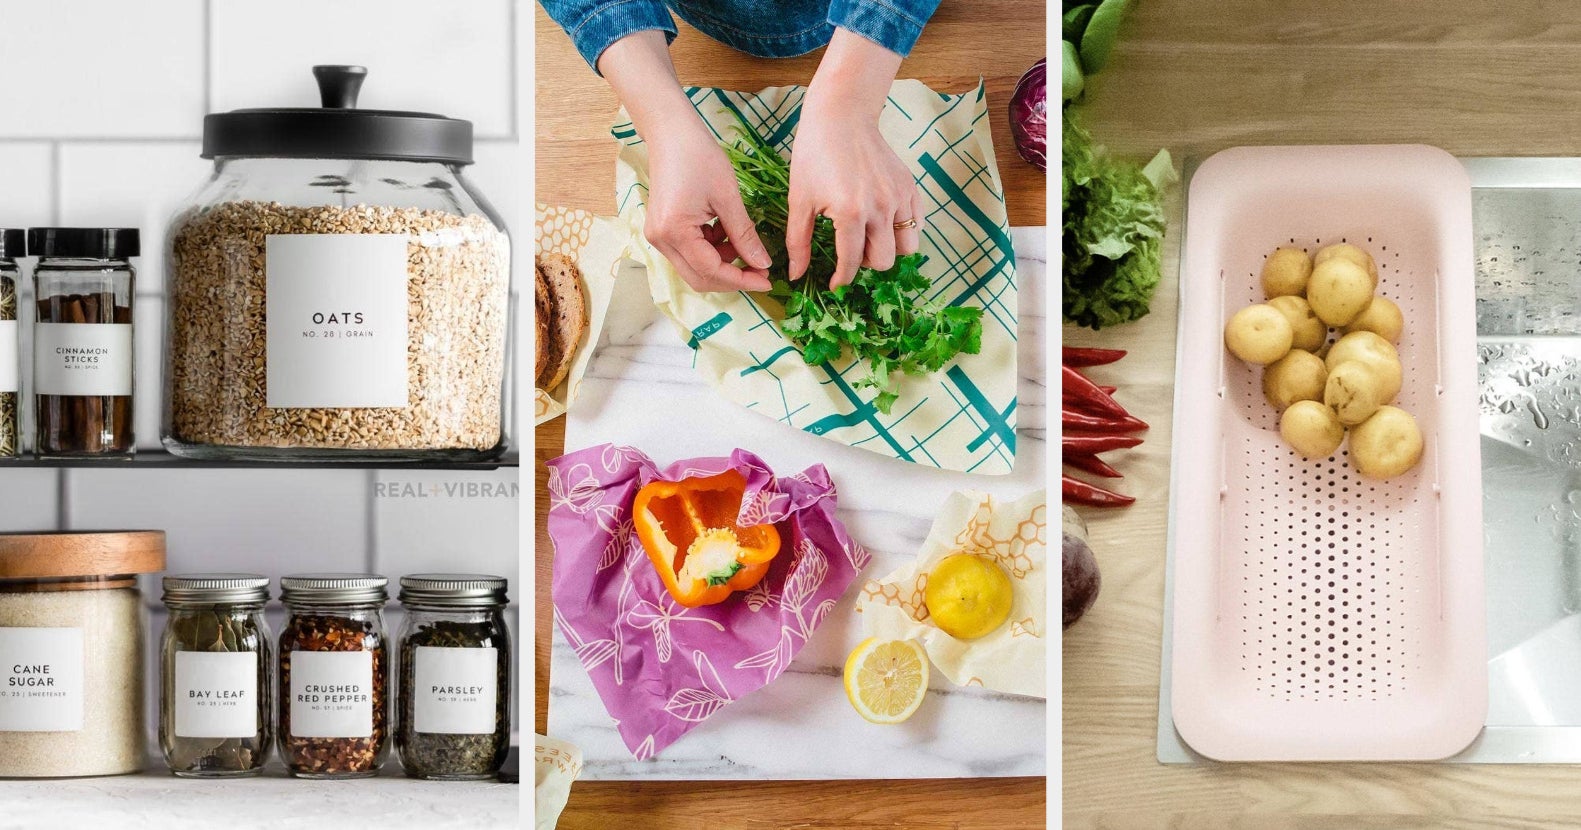 10 of the Best Drawer Spice Racks to Help Organize your Kitchen - Melanie  Jade Design